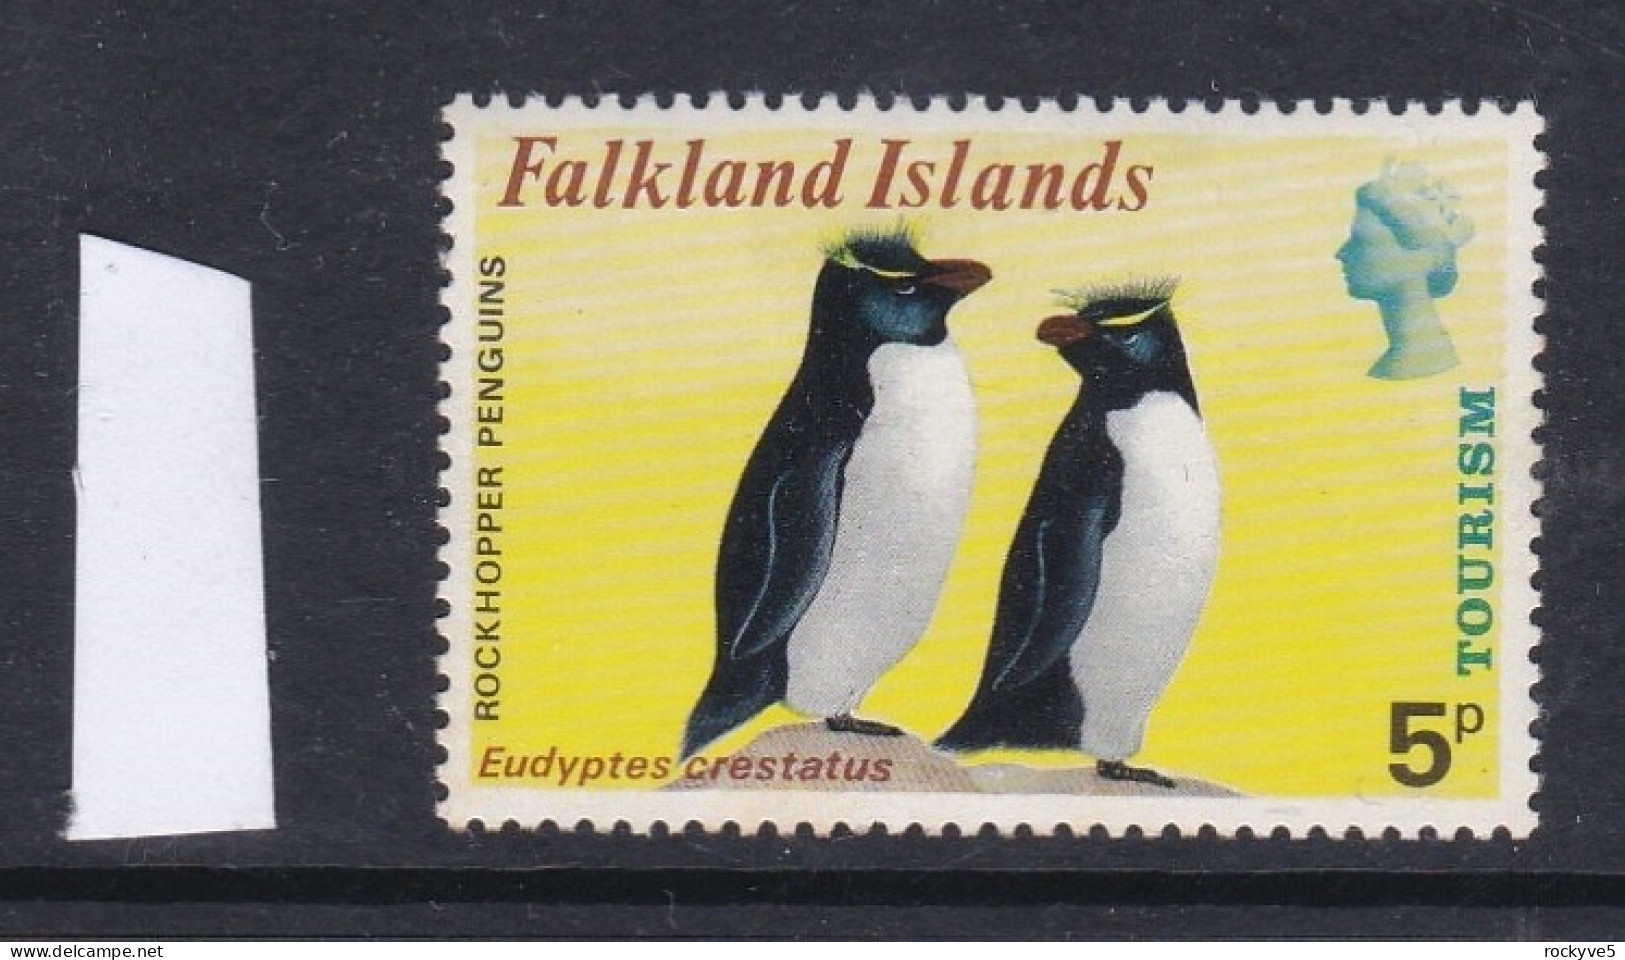 Falkland Islands 1974 Tourism 5p MNH CV £8.00 SP £2.99 - Falkland Islands